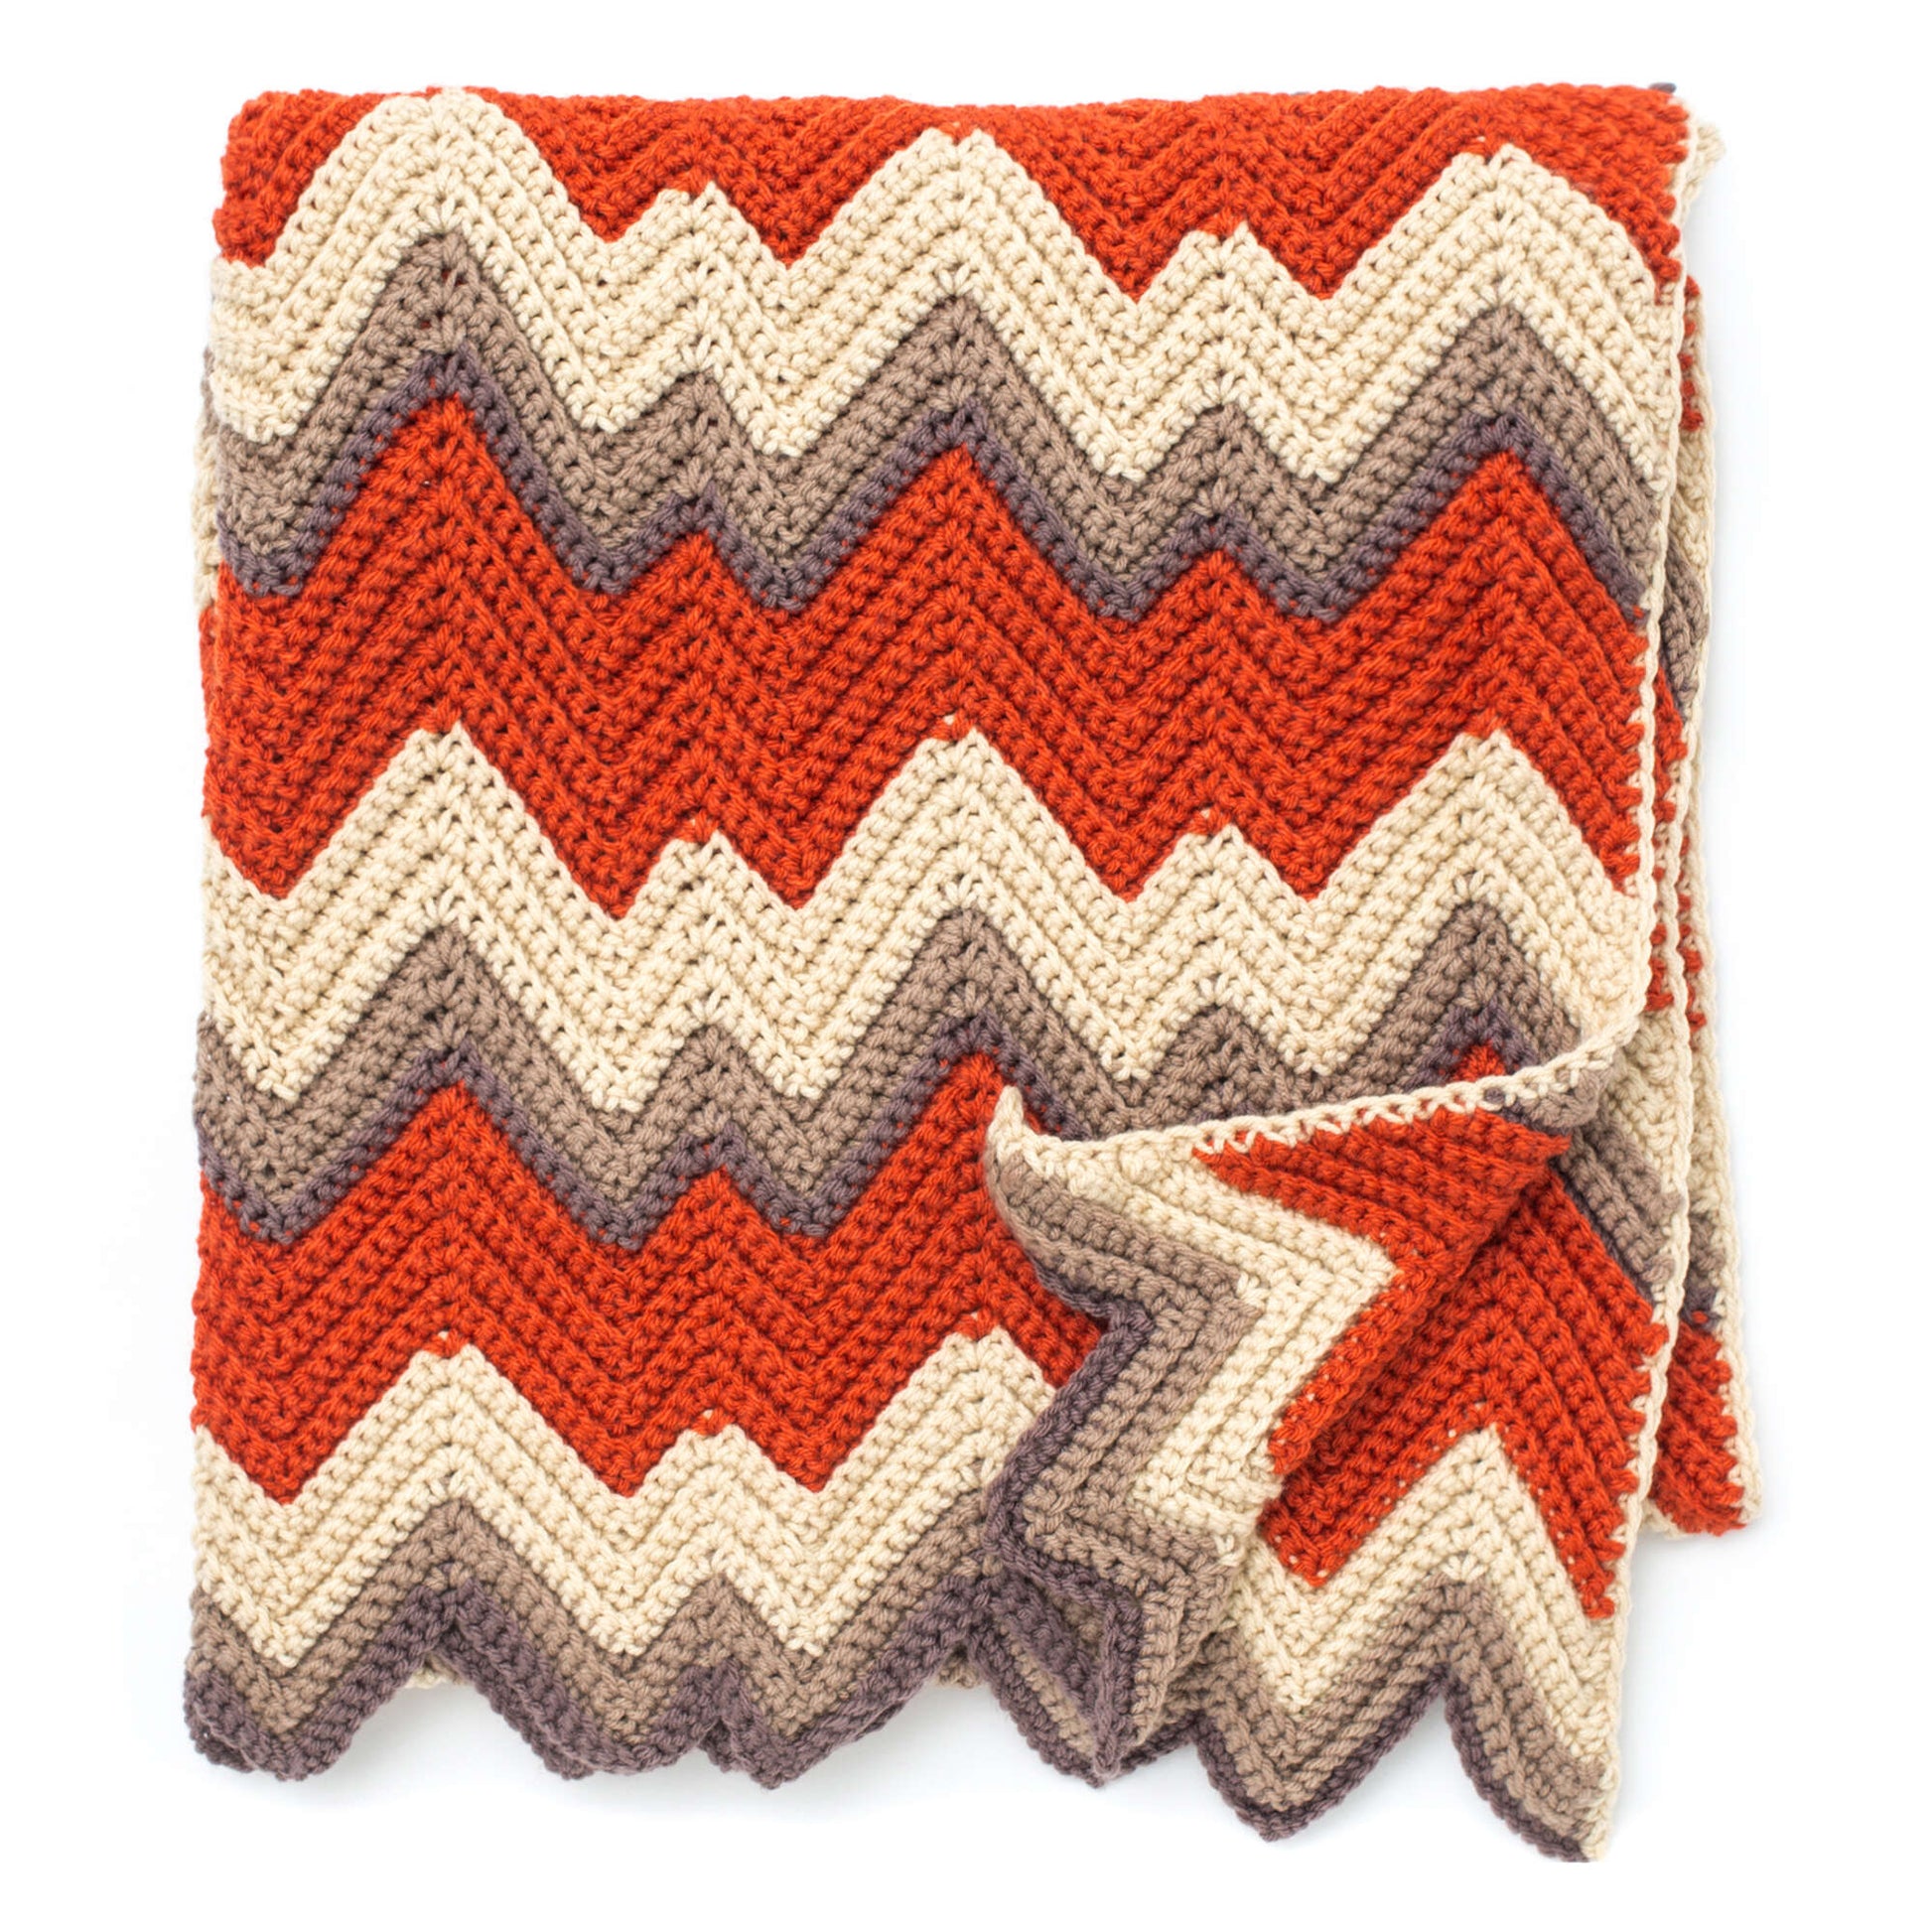 Free Bernat Crochet Zig-Zag Afghan Pattern